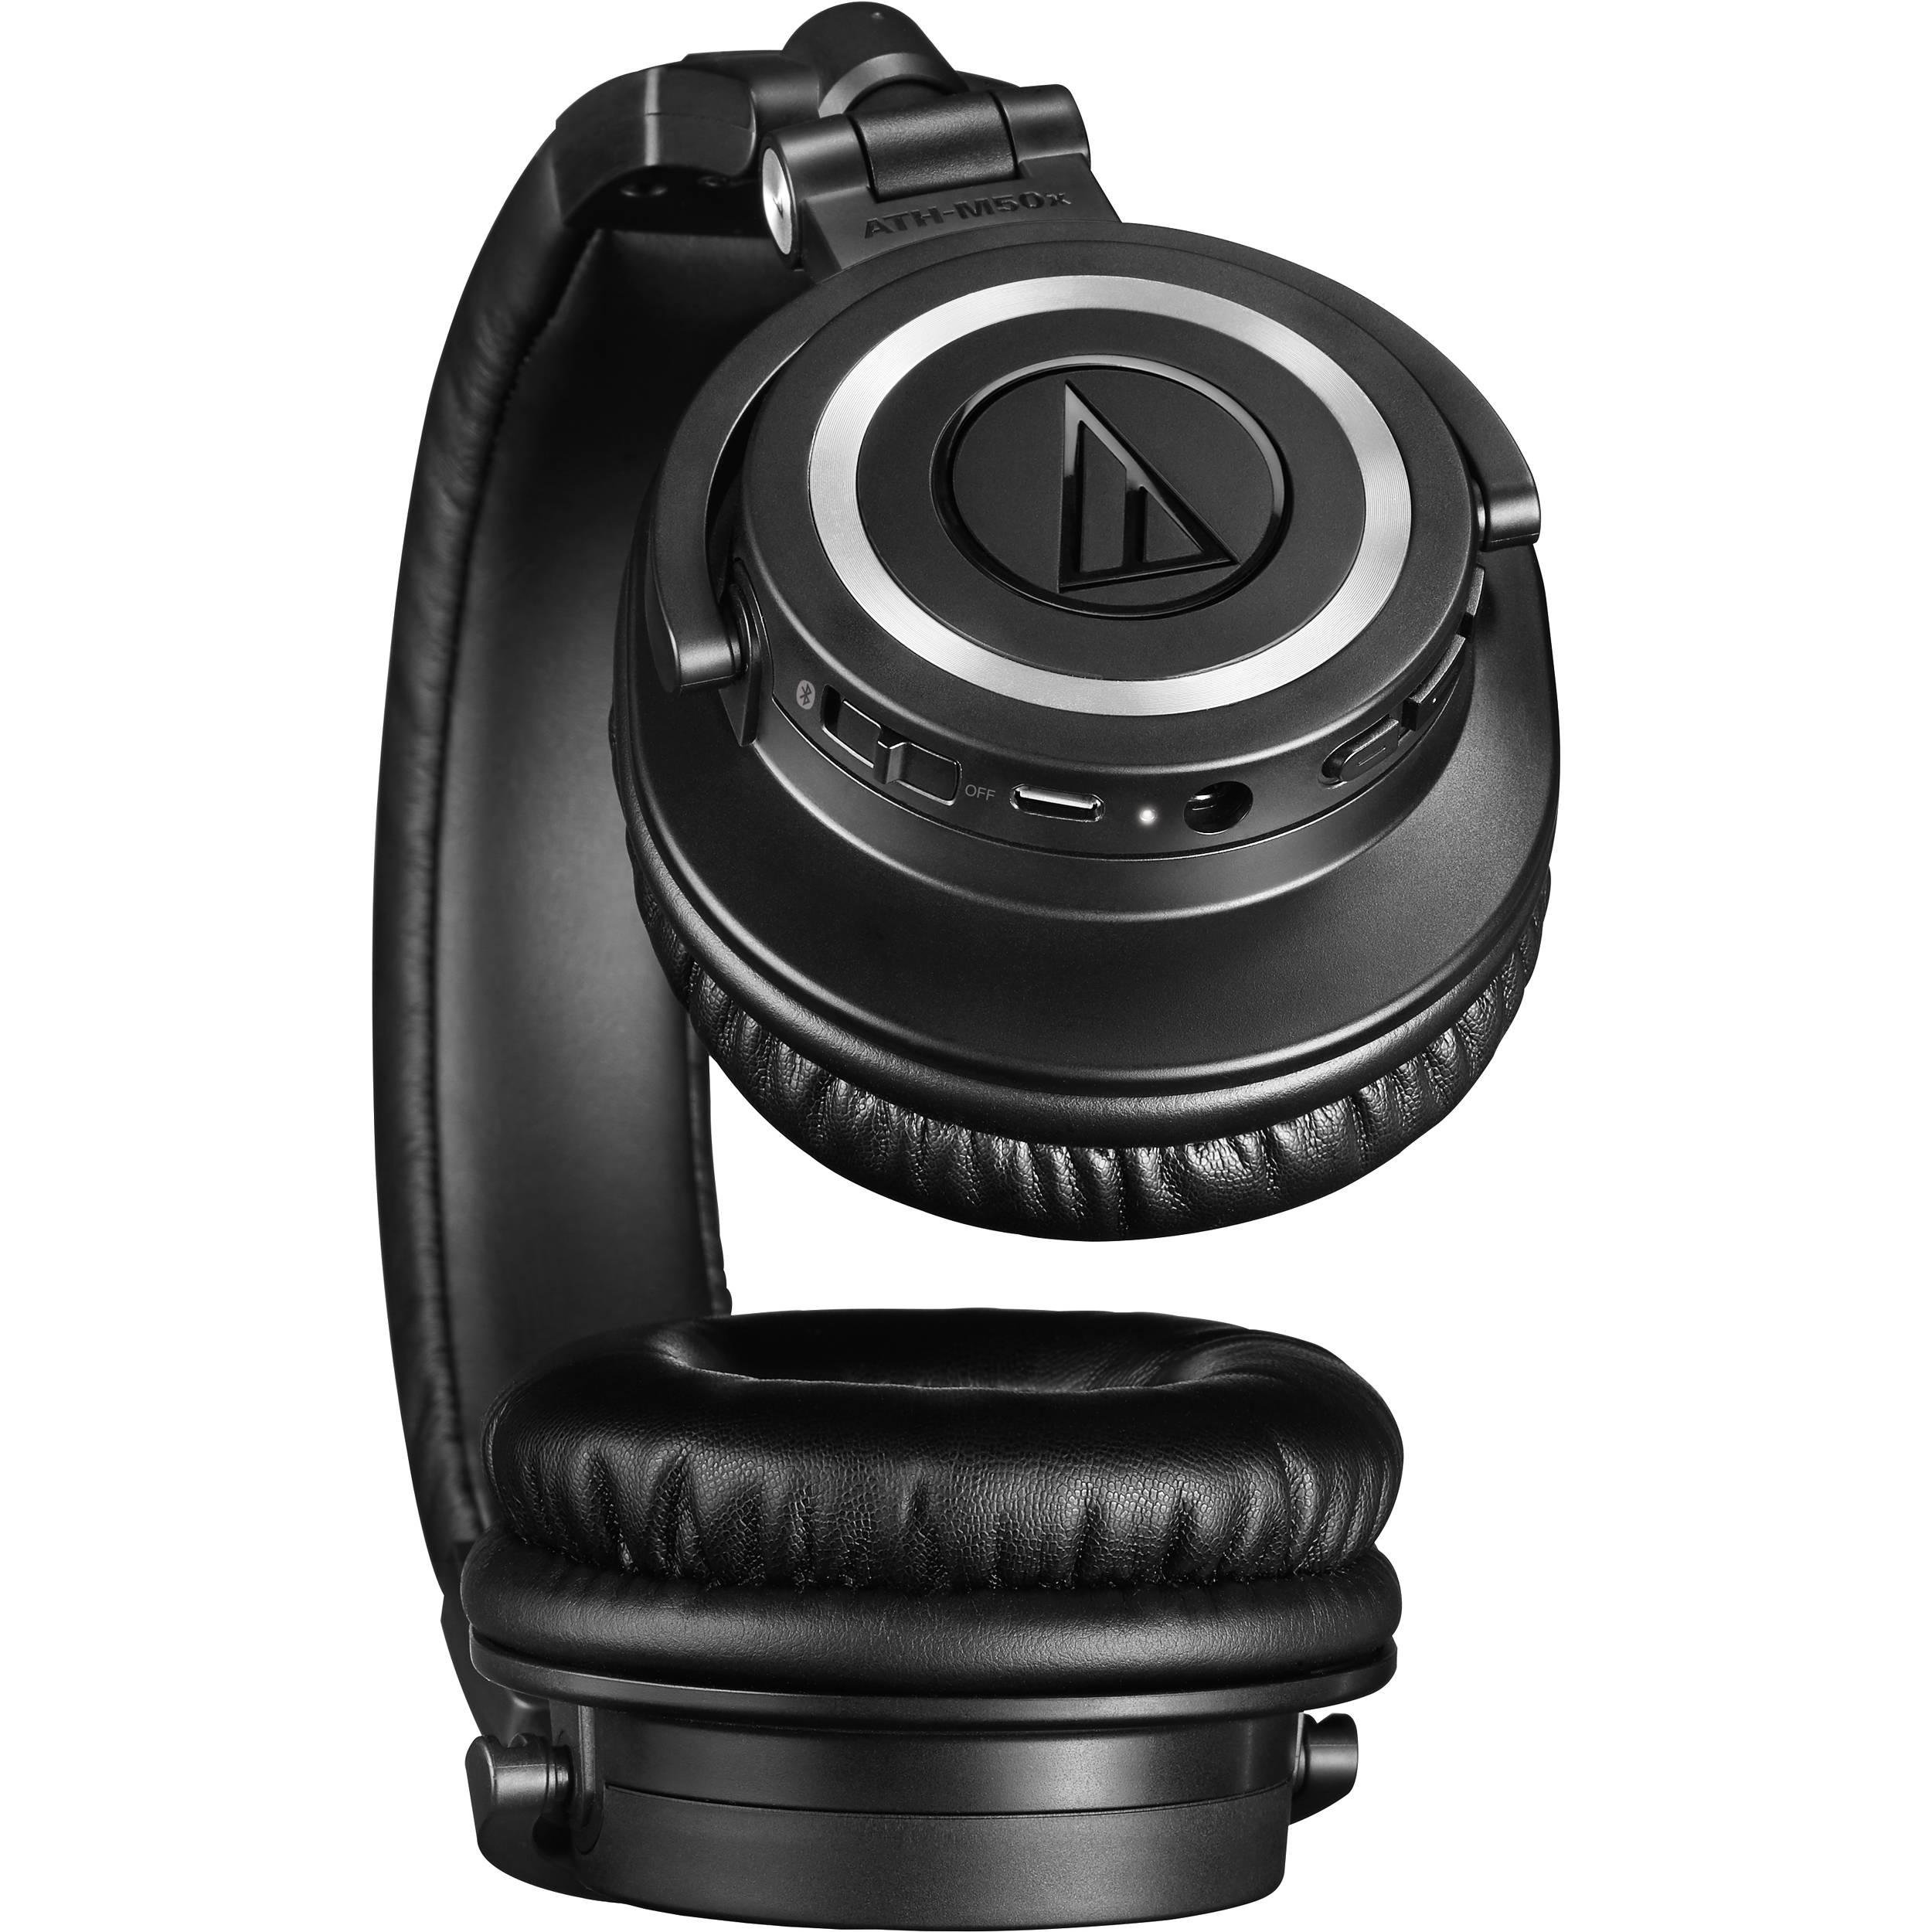 Audio-Technica Consumer ATH-M50XBT casque sans fil sans fil (noir)